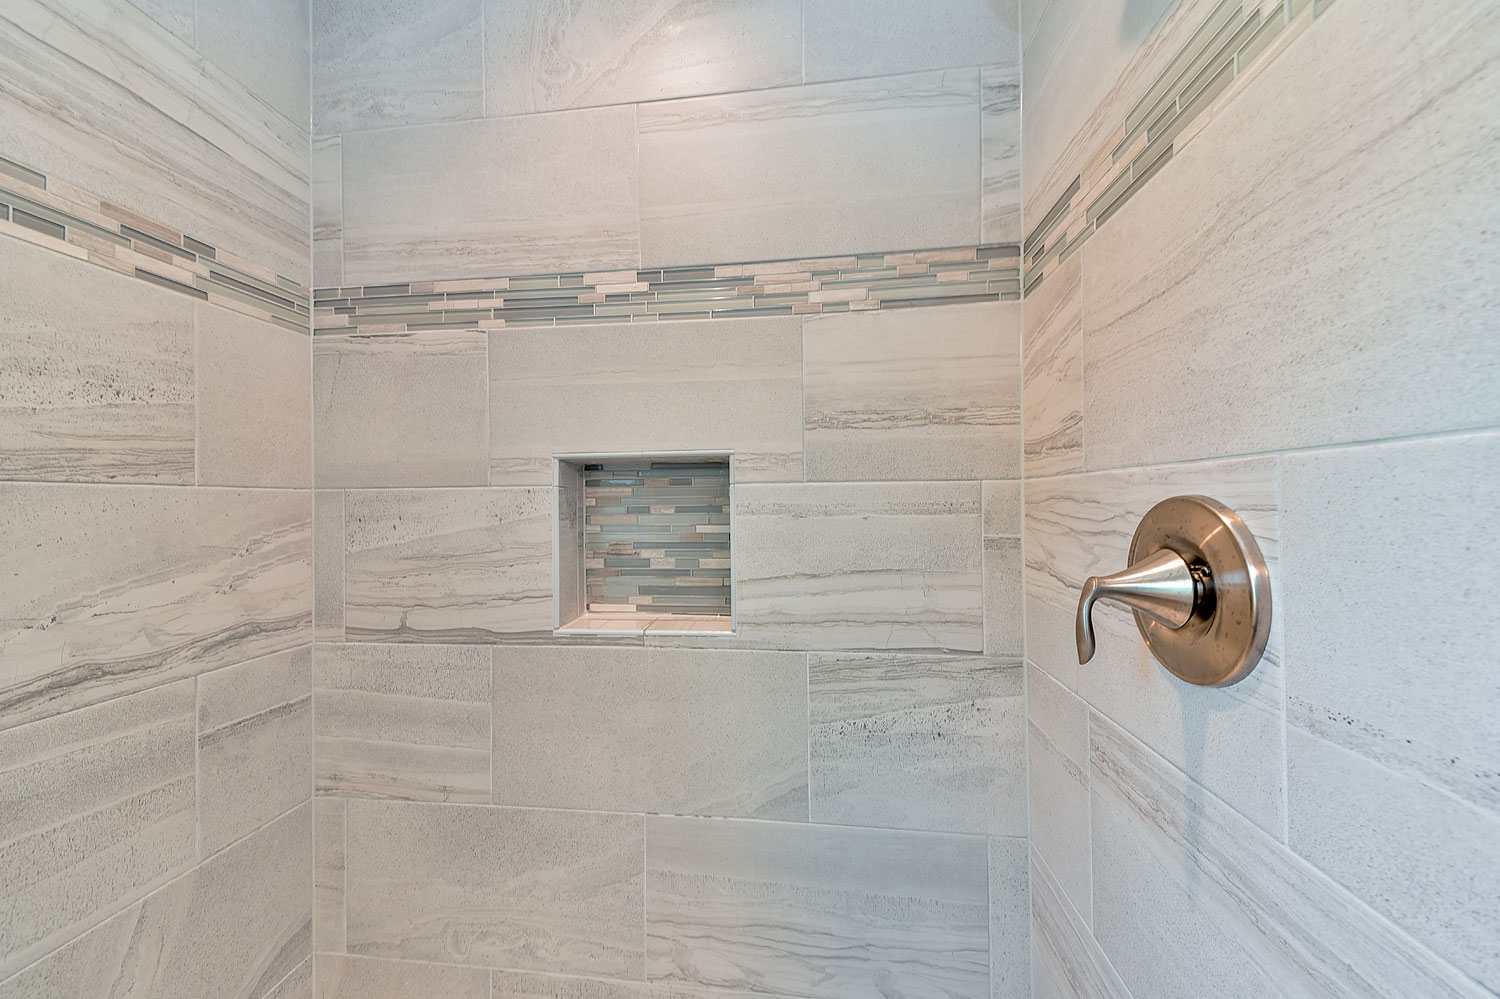 Bathroom Remodeling Tile Quartz Ideas Glen Ellyn Naperville Sebring Design Build